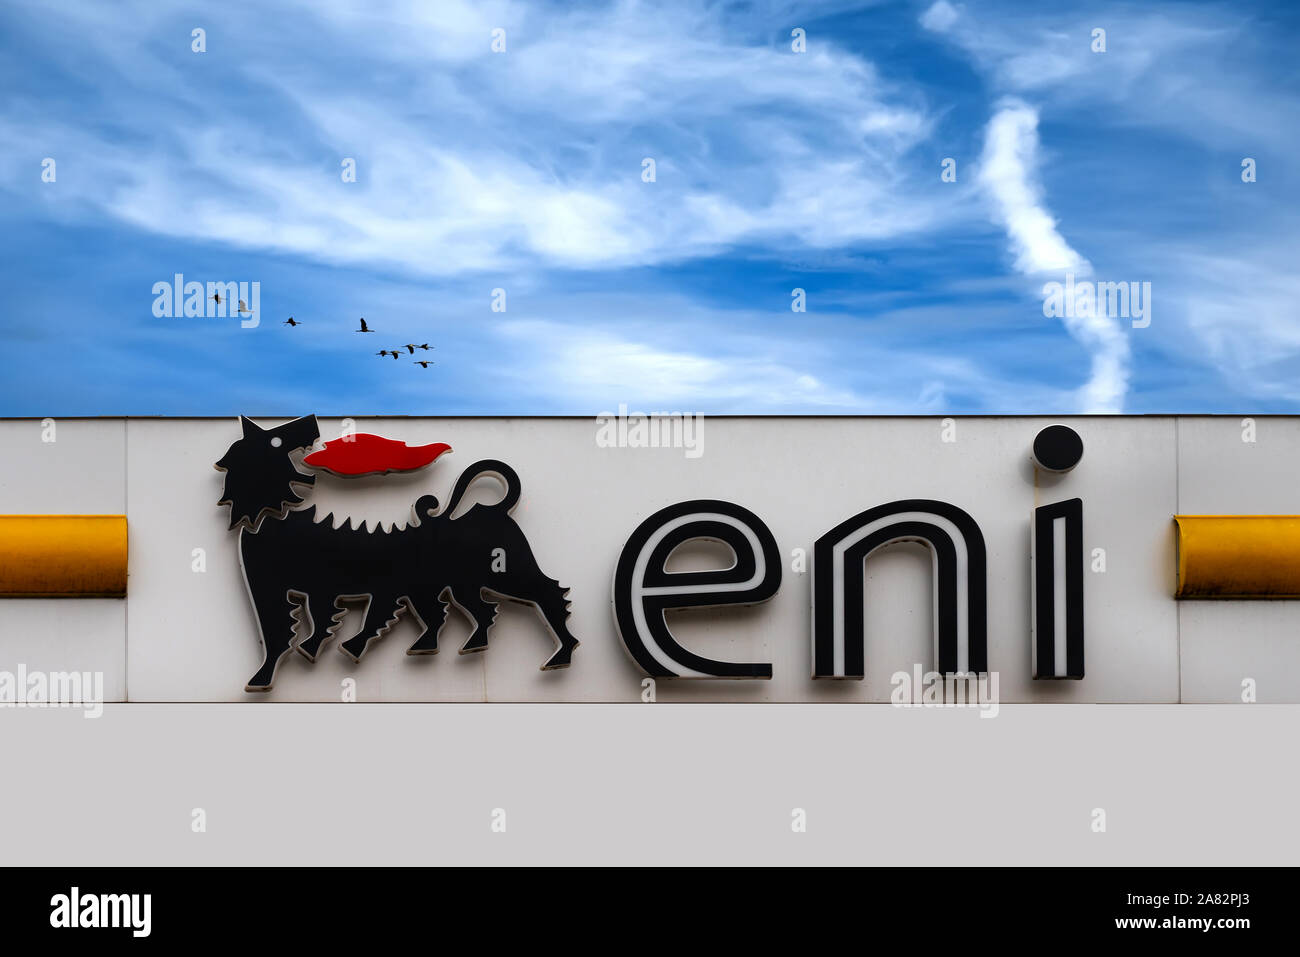 Bardolino, Italien - 10/31/2019: Eni S.p.A. in deutscher Sprache Agip ist eine Italienische multinationalen Öl- und Gasunternehmen mit Sitz in Rom. Logo Service Station i Stockfoto